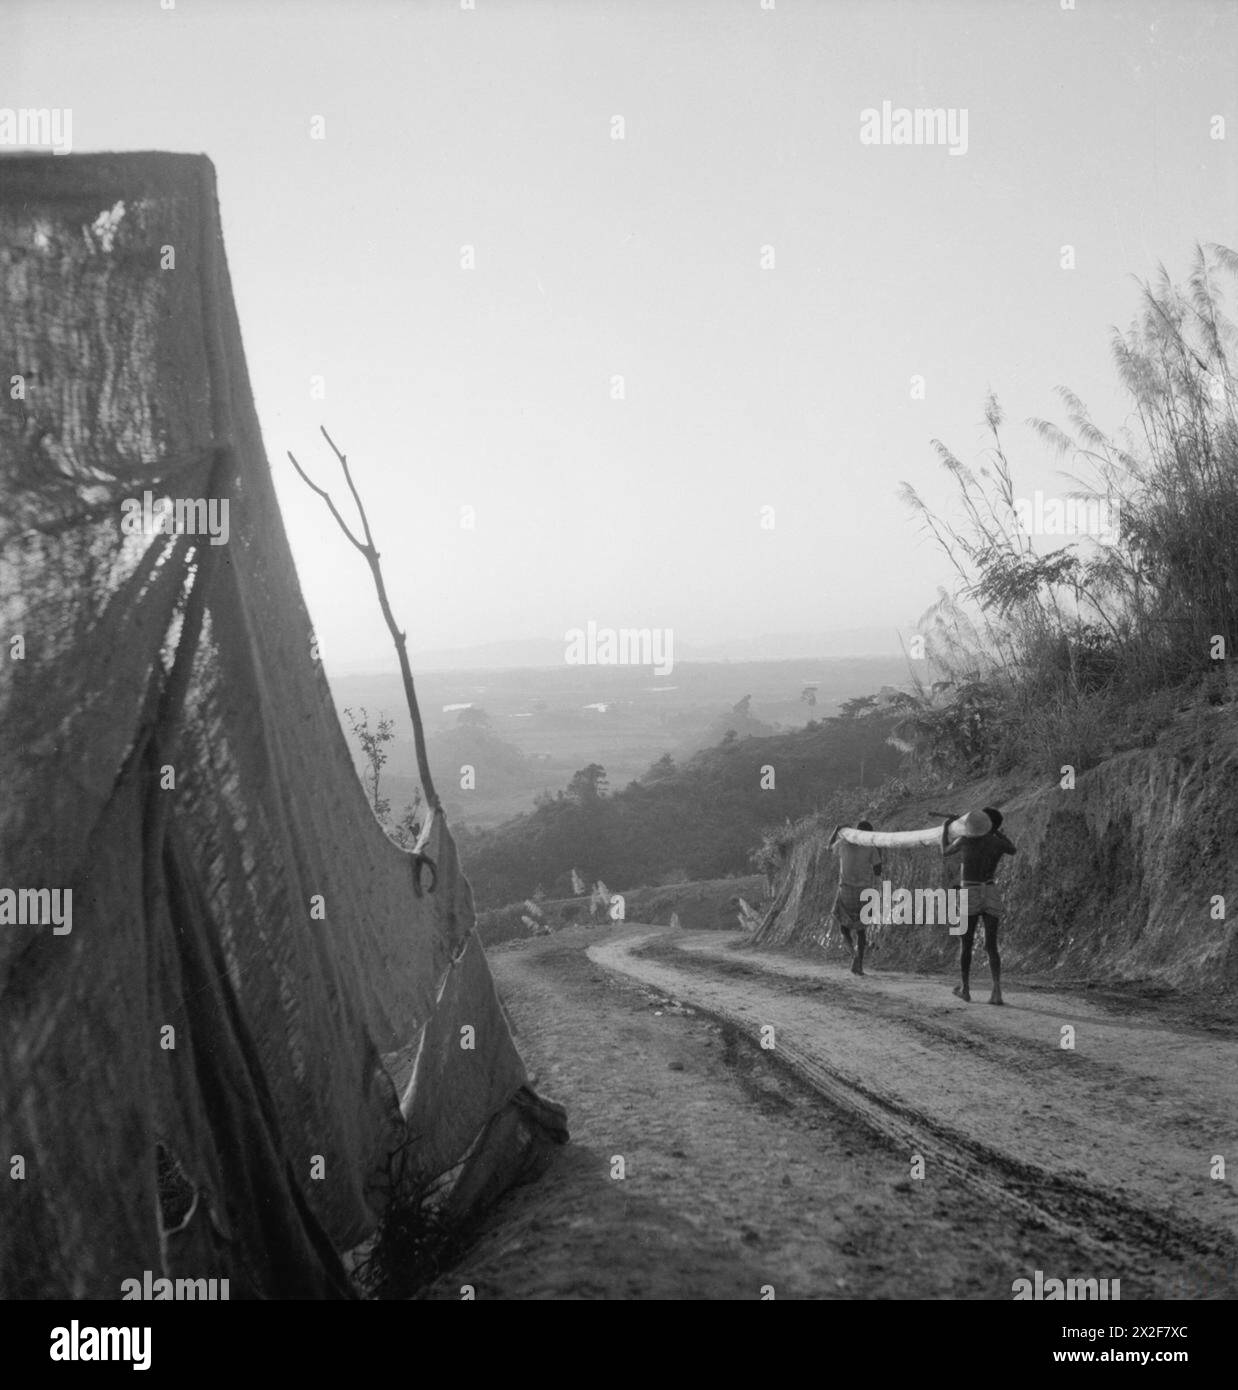 DER KRIEG IM FERNEN OSTEN: DIE BURMA-KAMPAGNE 1941-1945 – Versorgungsstraße im Bau in den Chin Hills, Arakan, Burma 1944. Beachten Sie, dass Leinwände aufgestellt sind, um Stürze aus 500 m Höhe zu verhindern Stockfoto